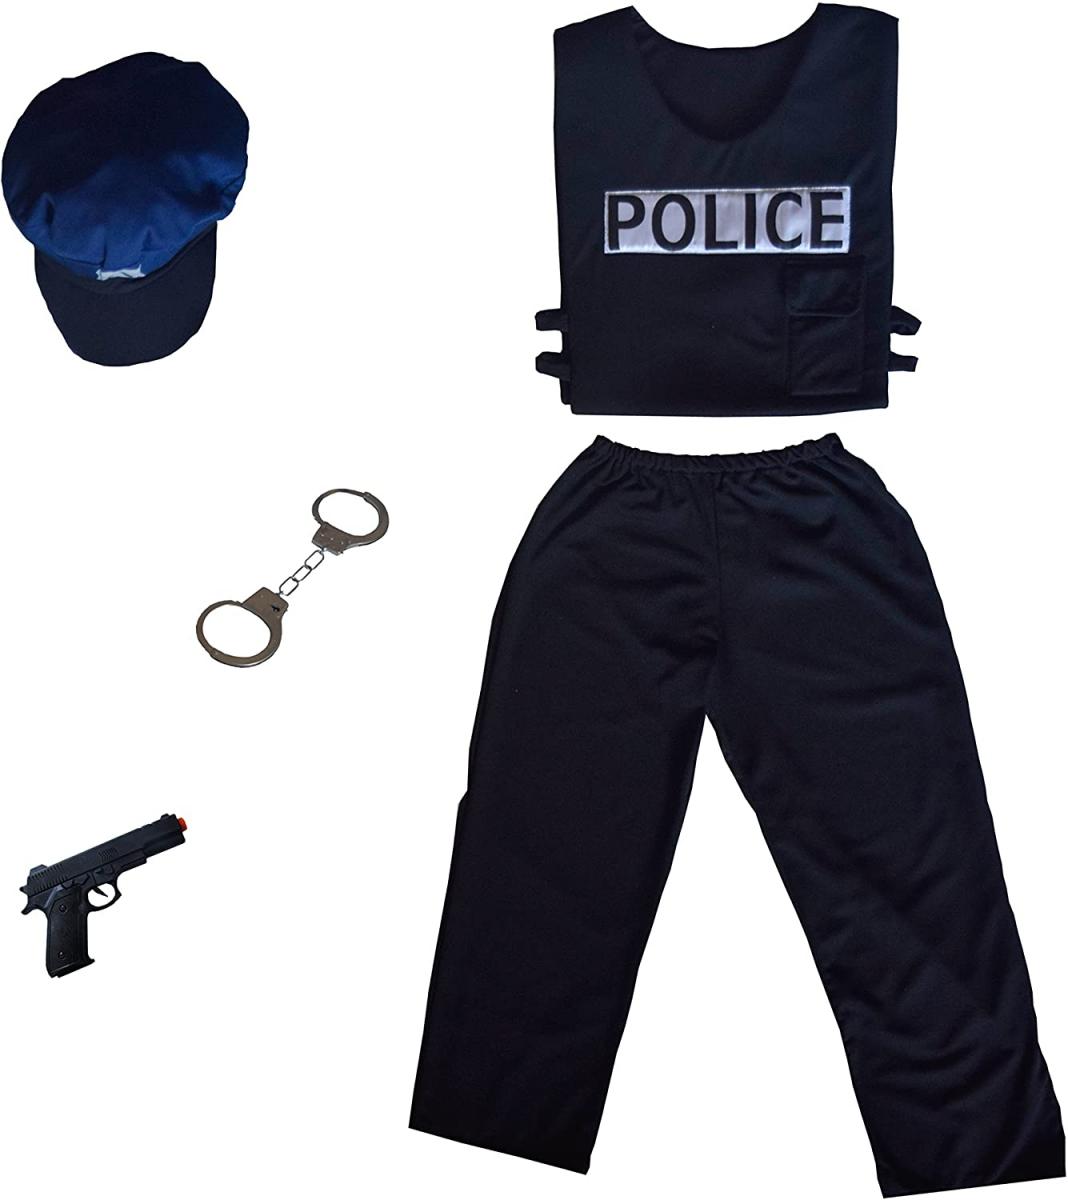 Deguisement policier 8-10 ans au meilleur prix